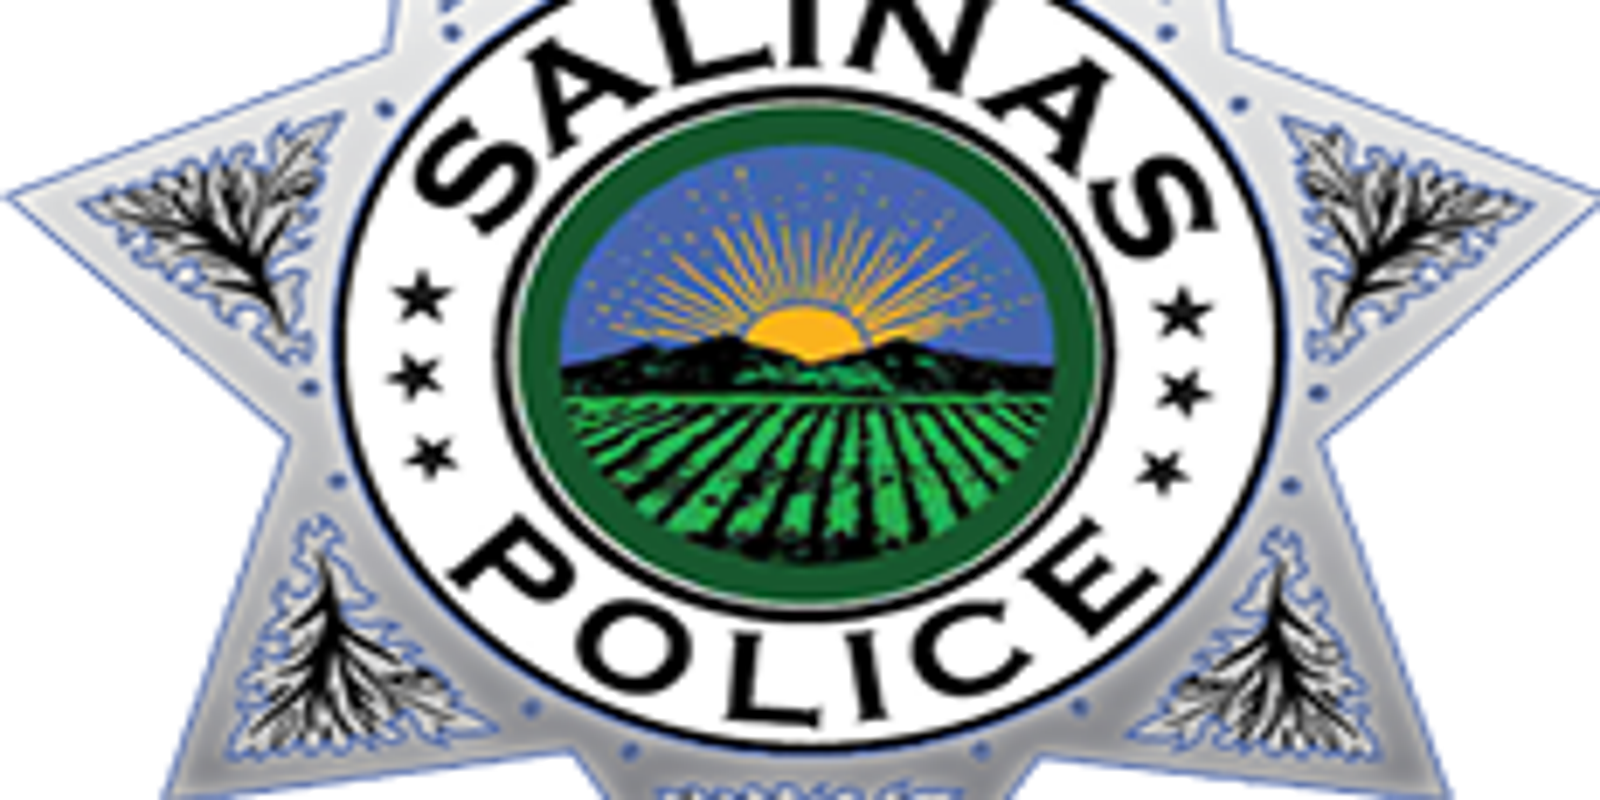 Salinas Police Arrest Suspect In Fresno Teens Murder